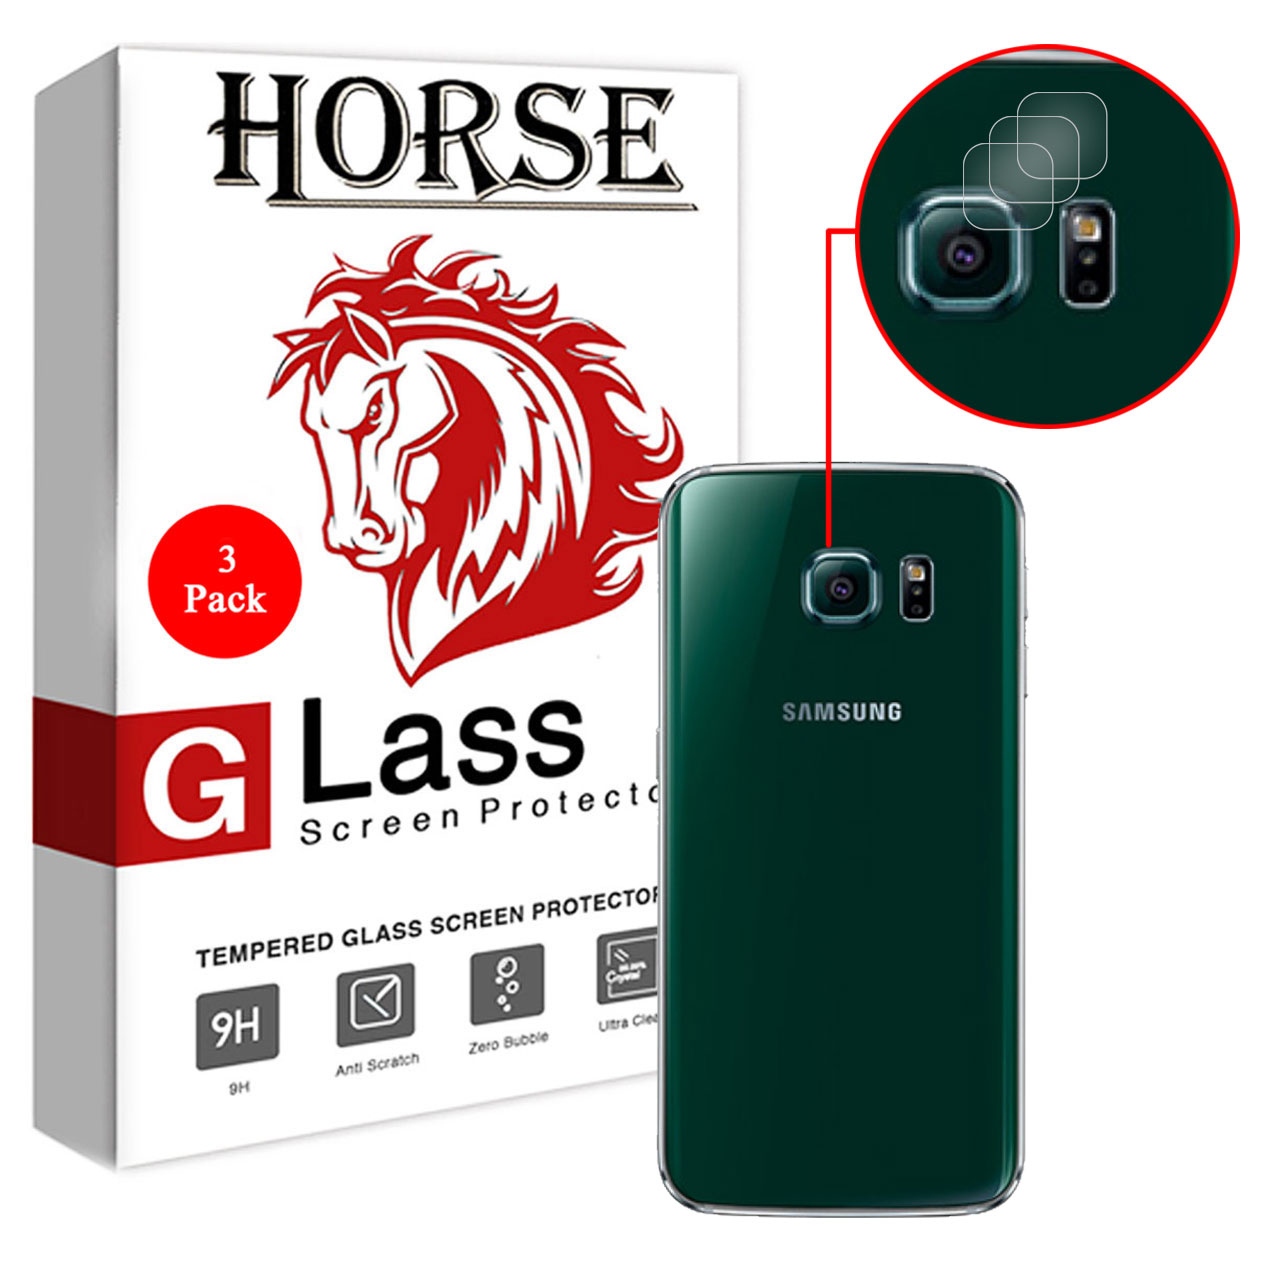 محافظ لنز دوربین هورس مدل UTF مناسب برای گوشی موبایل سامسونگ Galaxy S6 edge بسته سه عددی